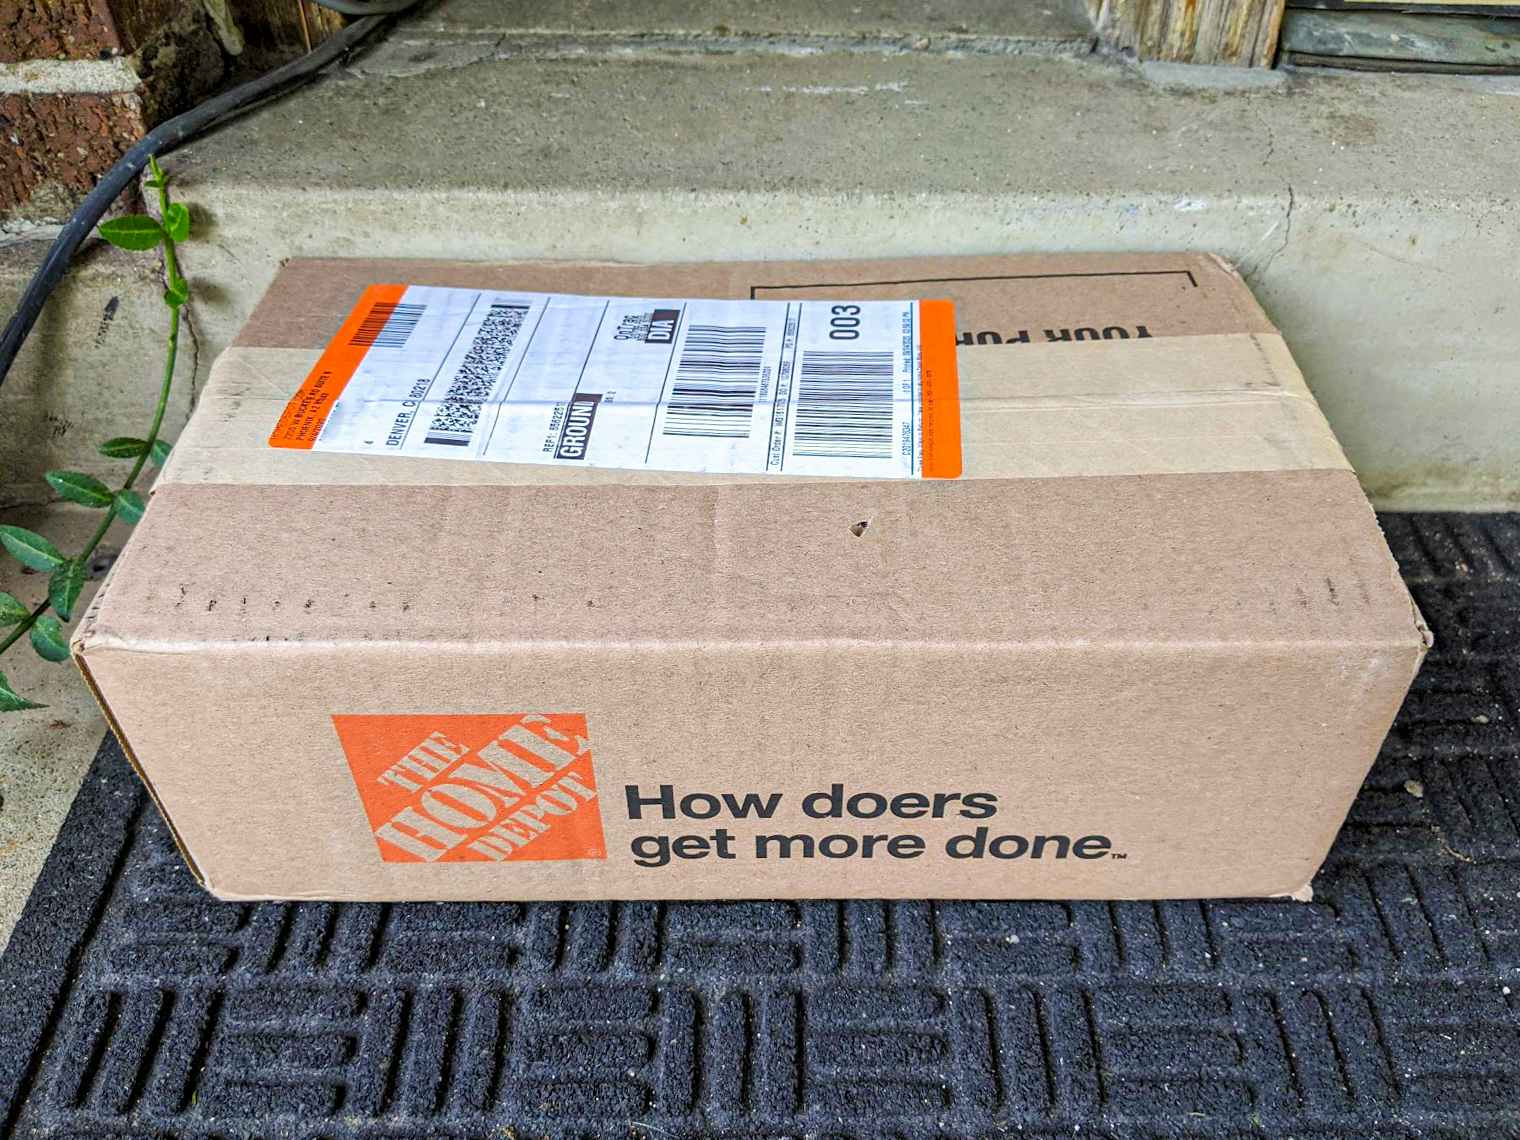 Home Depot box on a doorstep